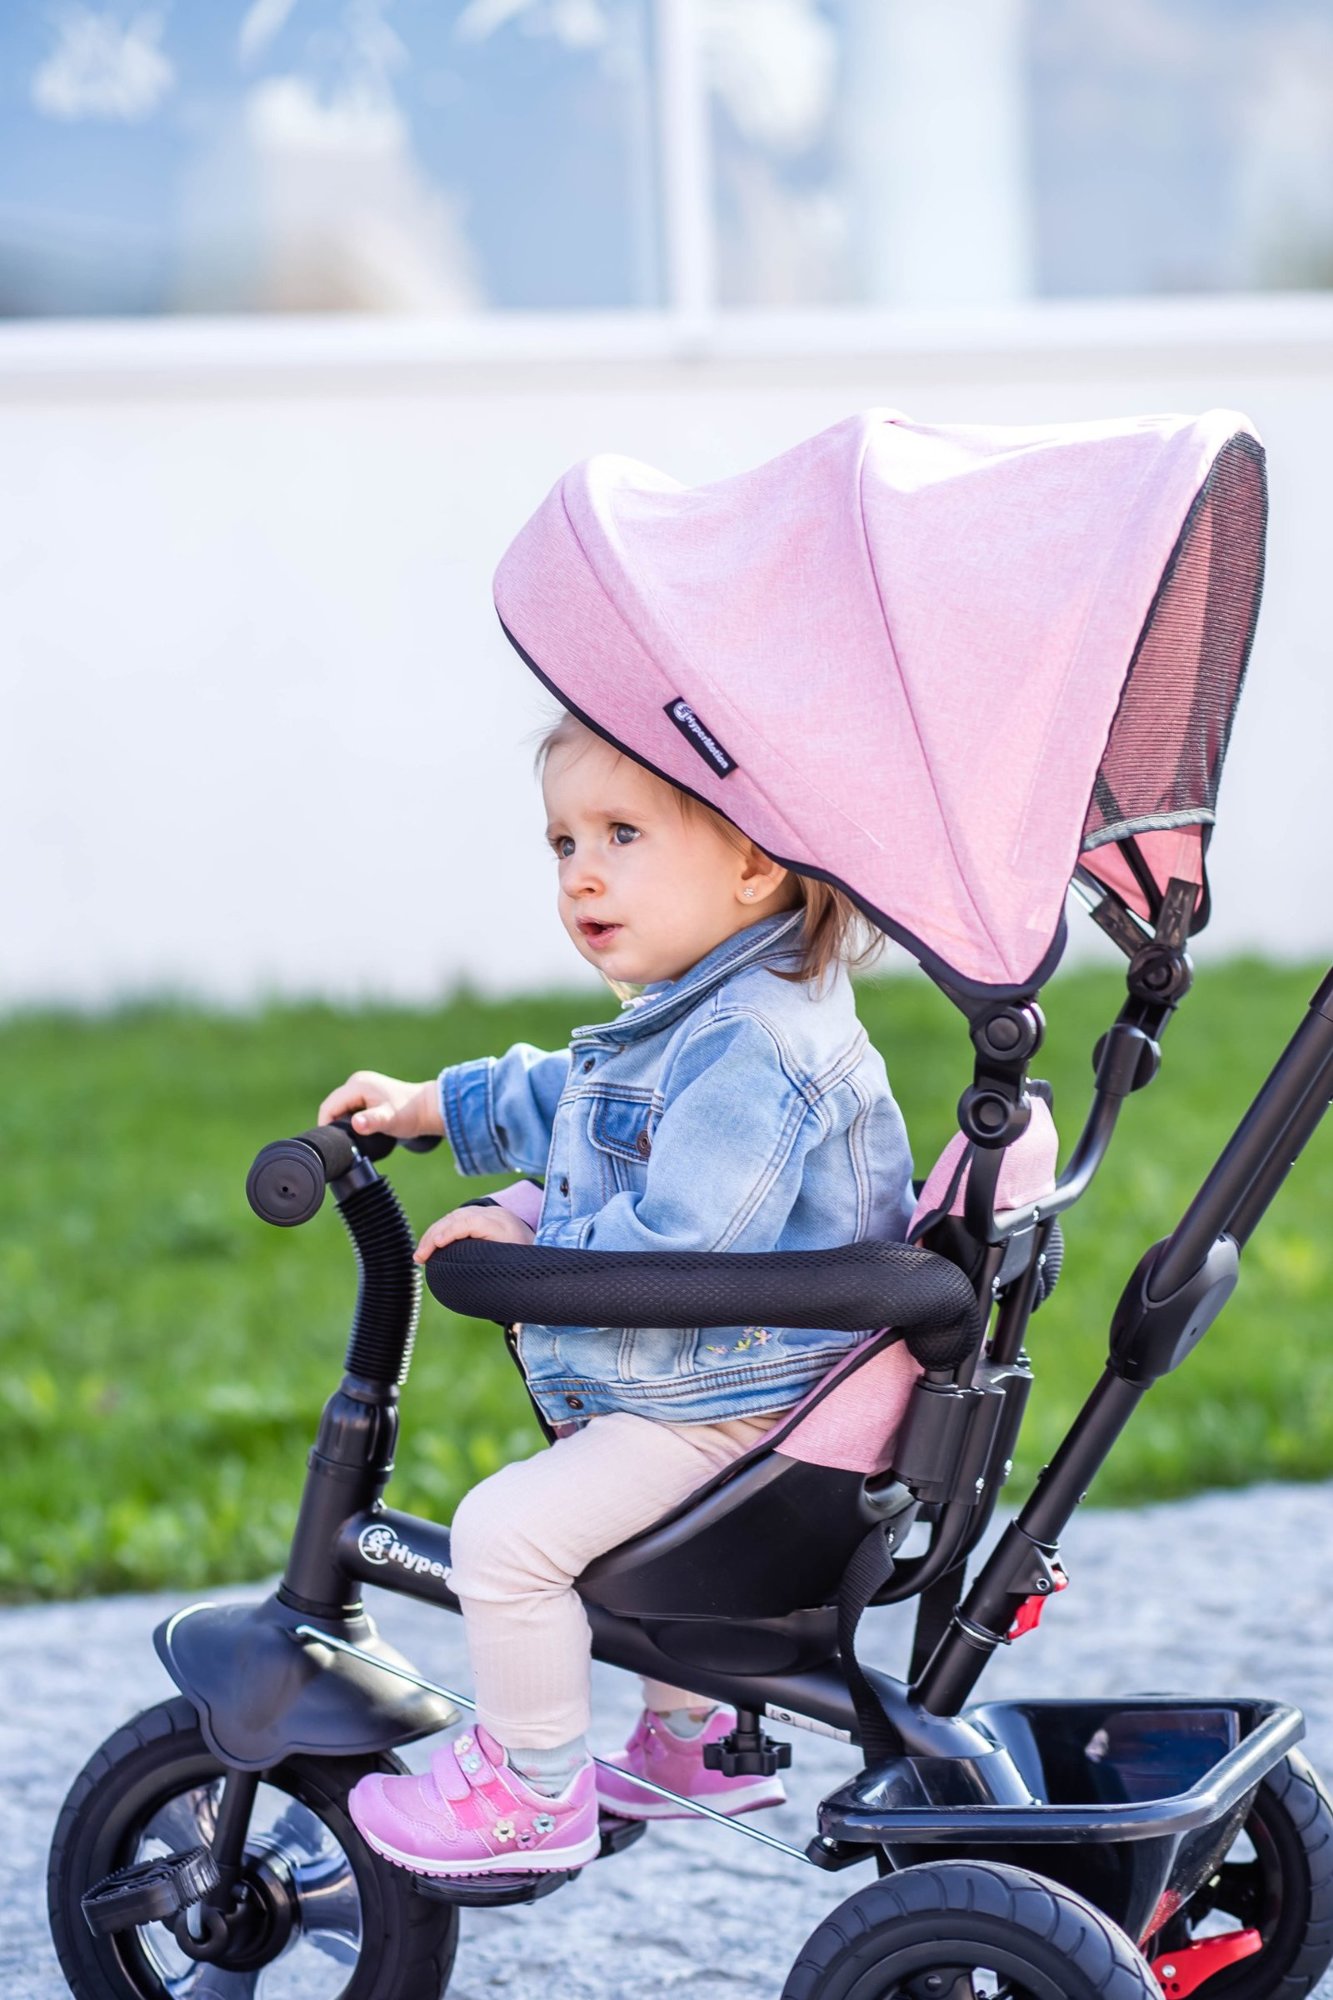 Rowerek trójkołowy dla dzieci 1-4 lata - TOBI FREY - kolor różowy - obracany - pompowane koła + pchacz